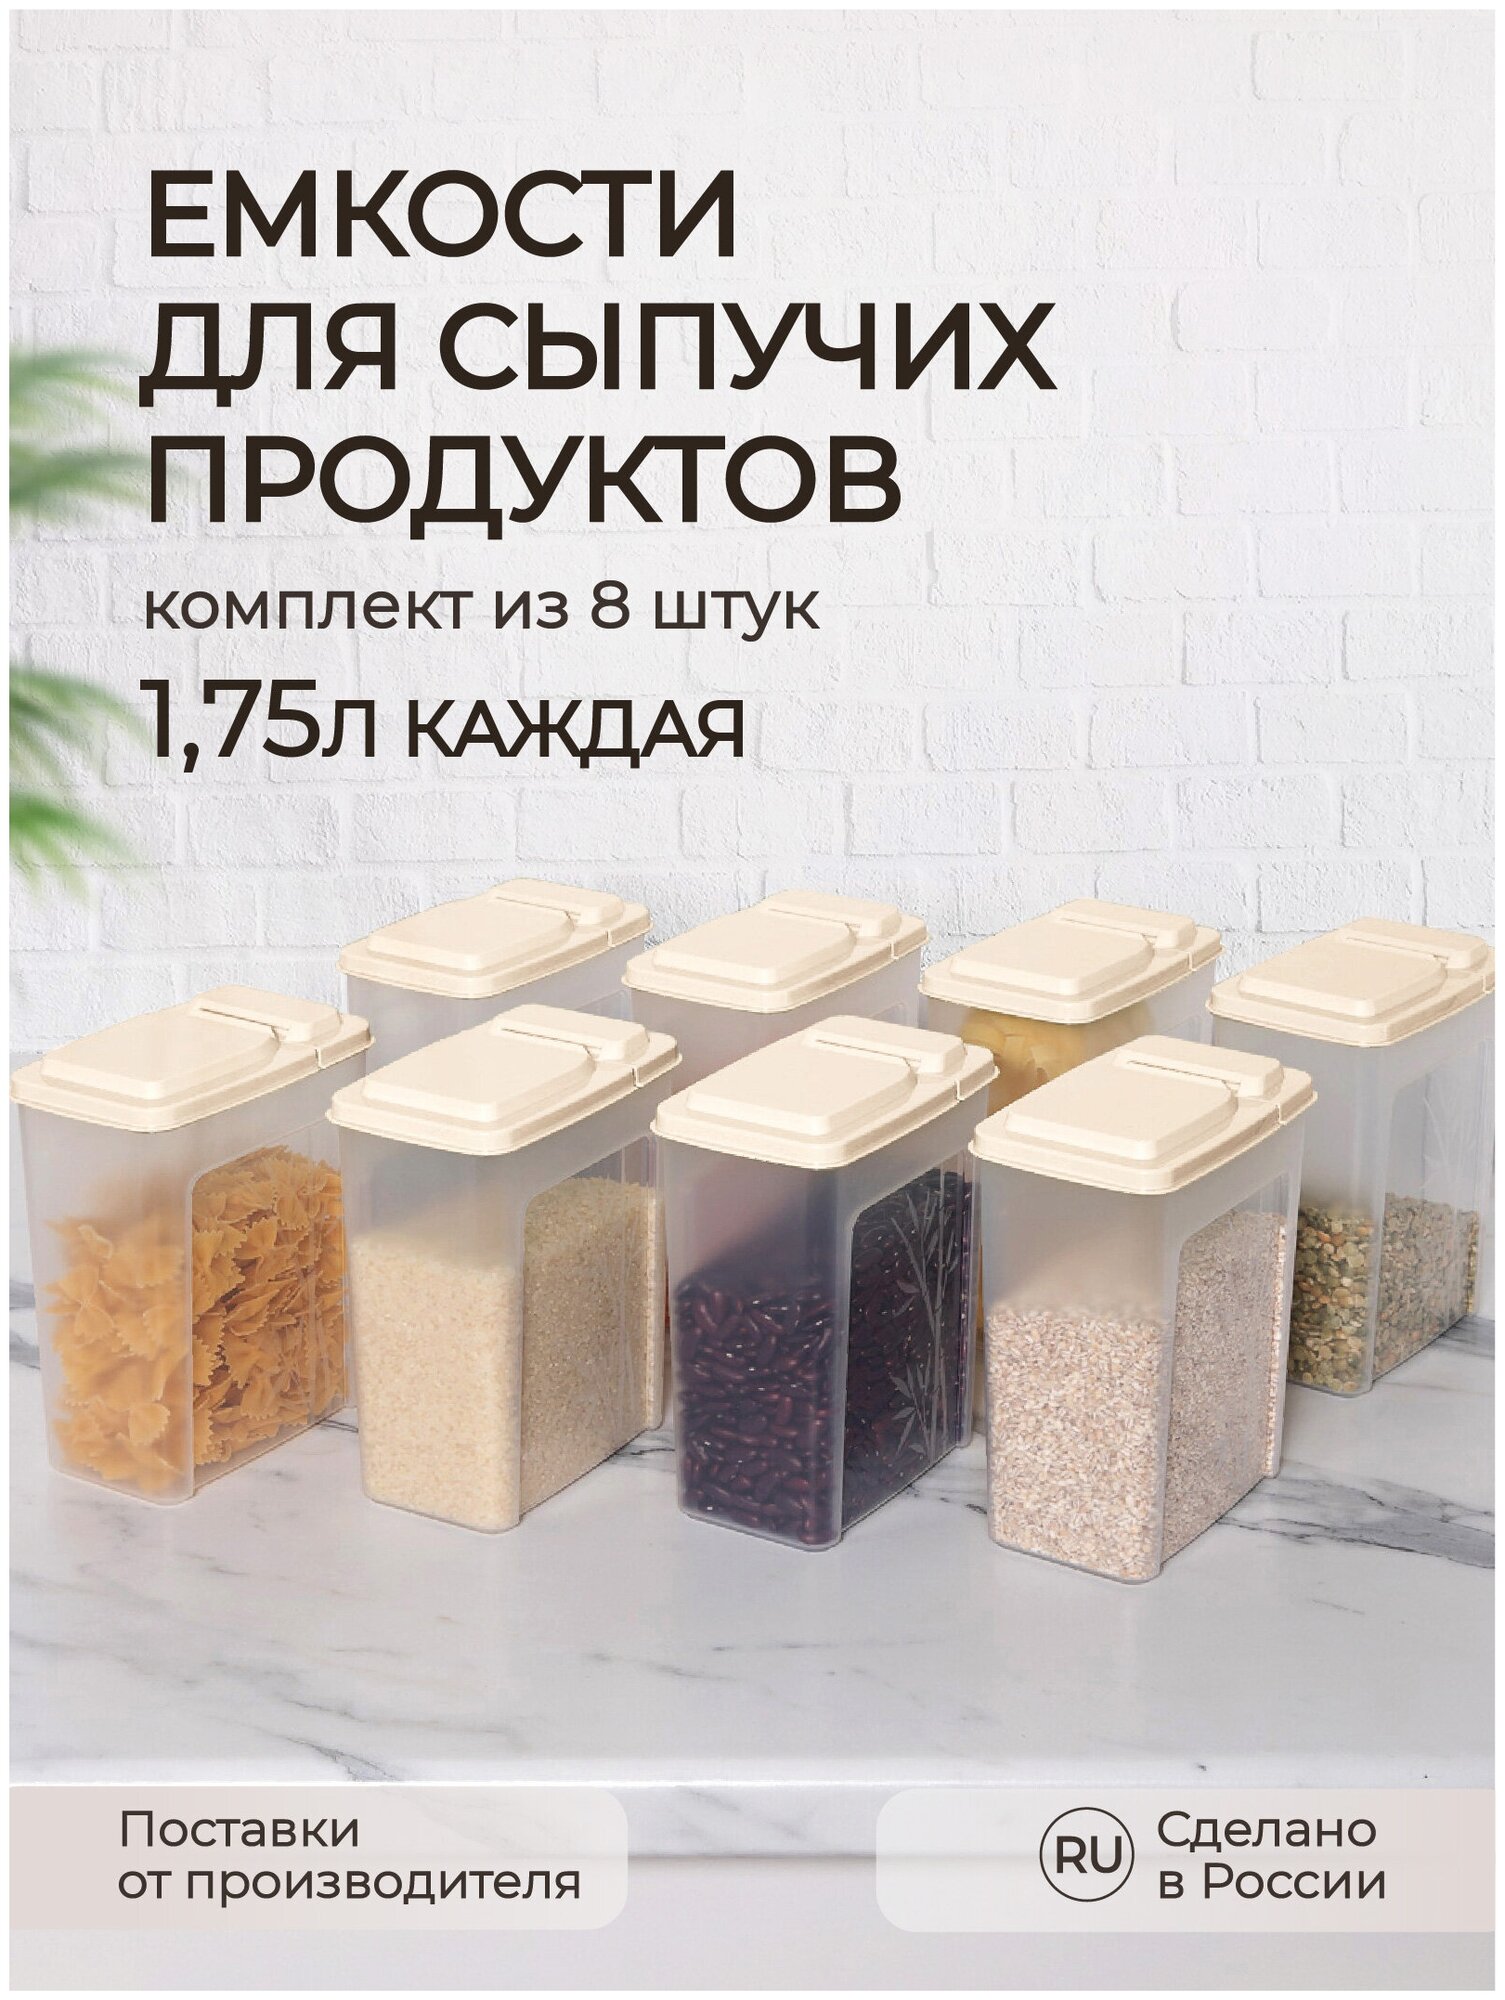 Комплект емкостей для сыпучих продуктов Phibo 8 шт, бамбук, 1.75 л, бежевый 43427850722